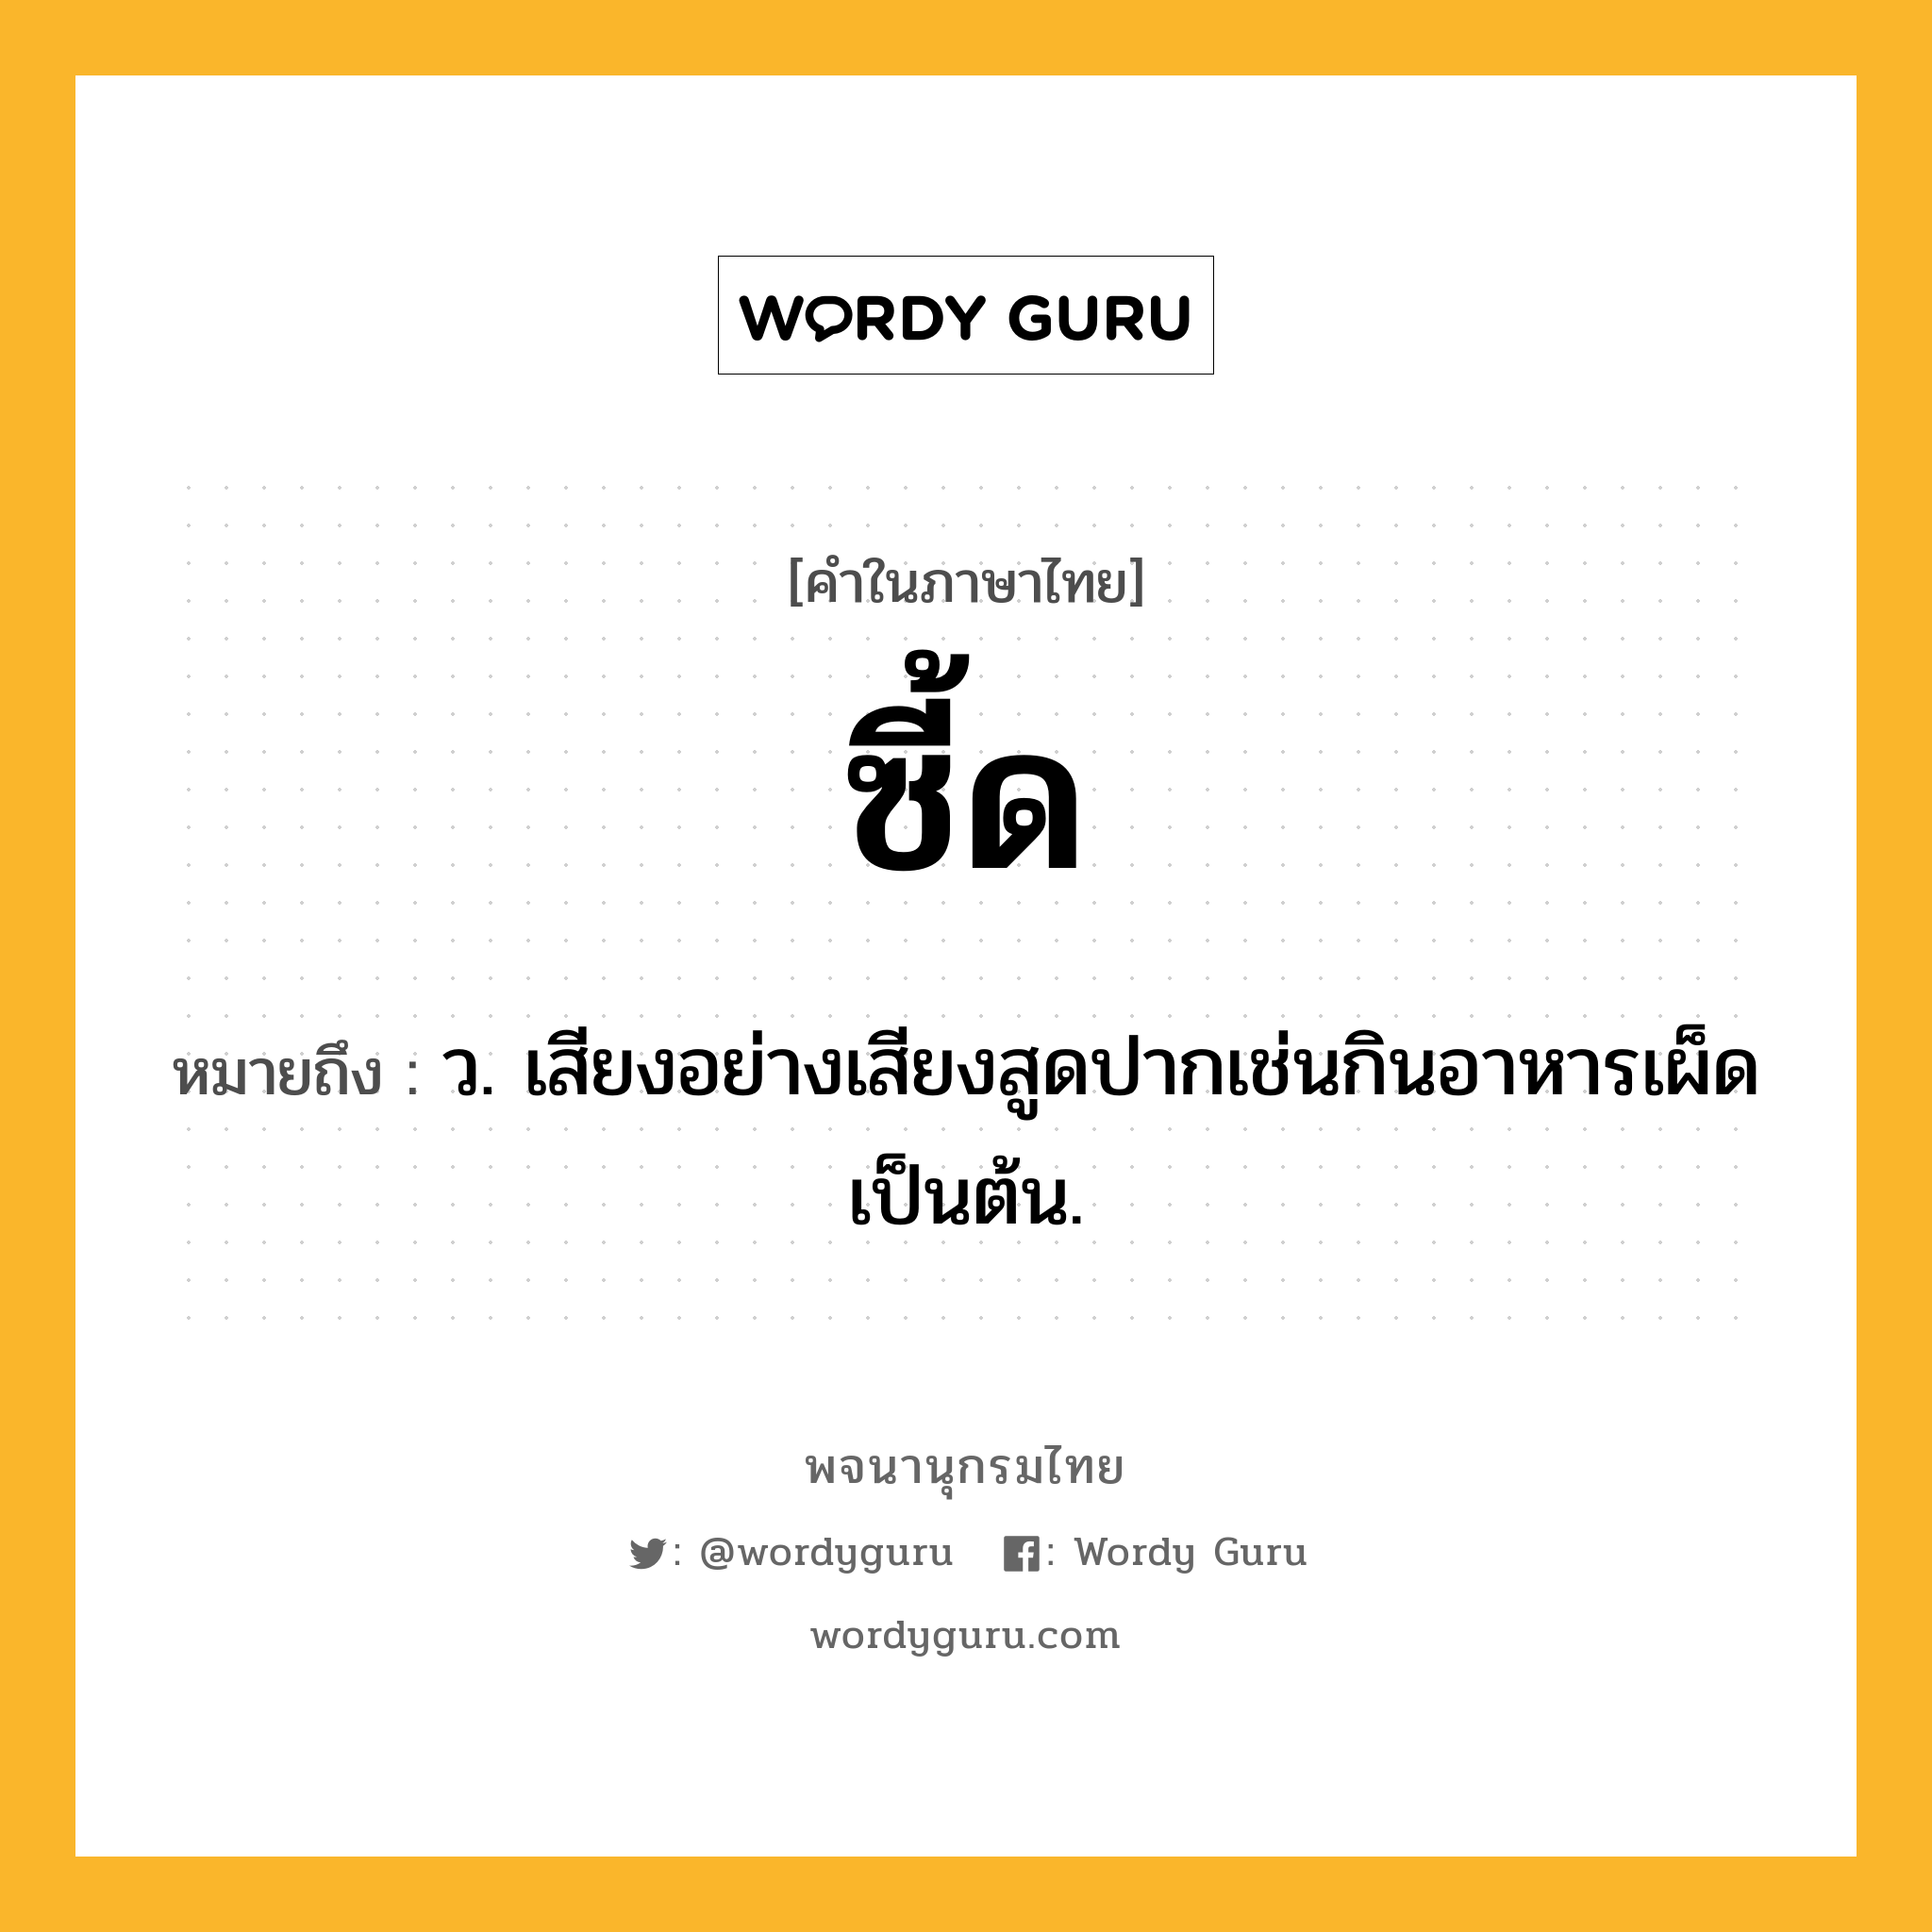 ซี้ด หมายถึงอะไร?, คำในภาษาไทย ซี้ด หมายถึง ว. เสียงอย่างเสียงสูดปากเช่นกินอาหารเผ็ดเป็นต้น.